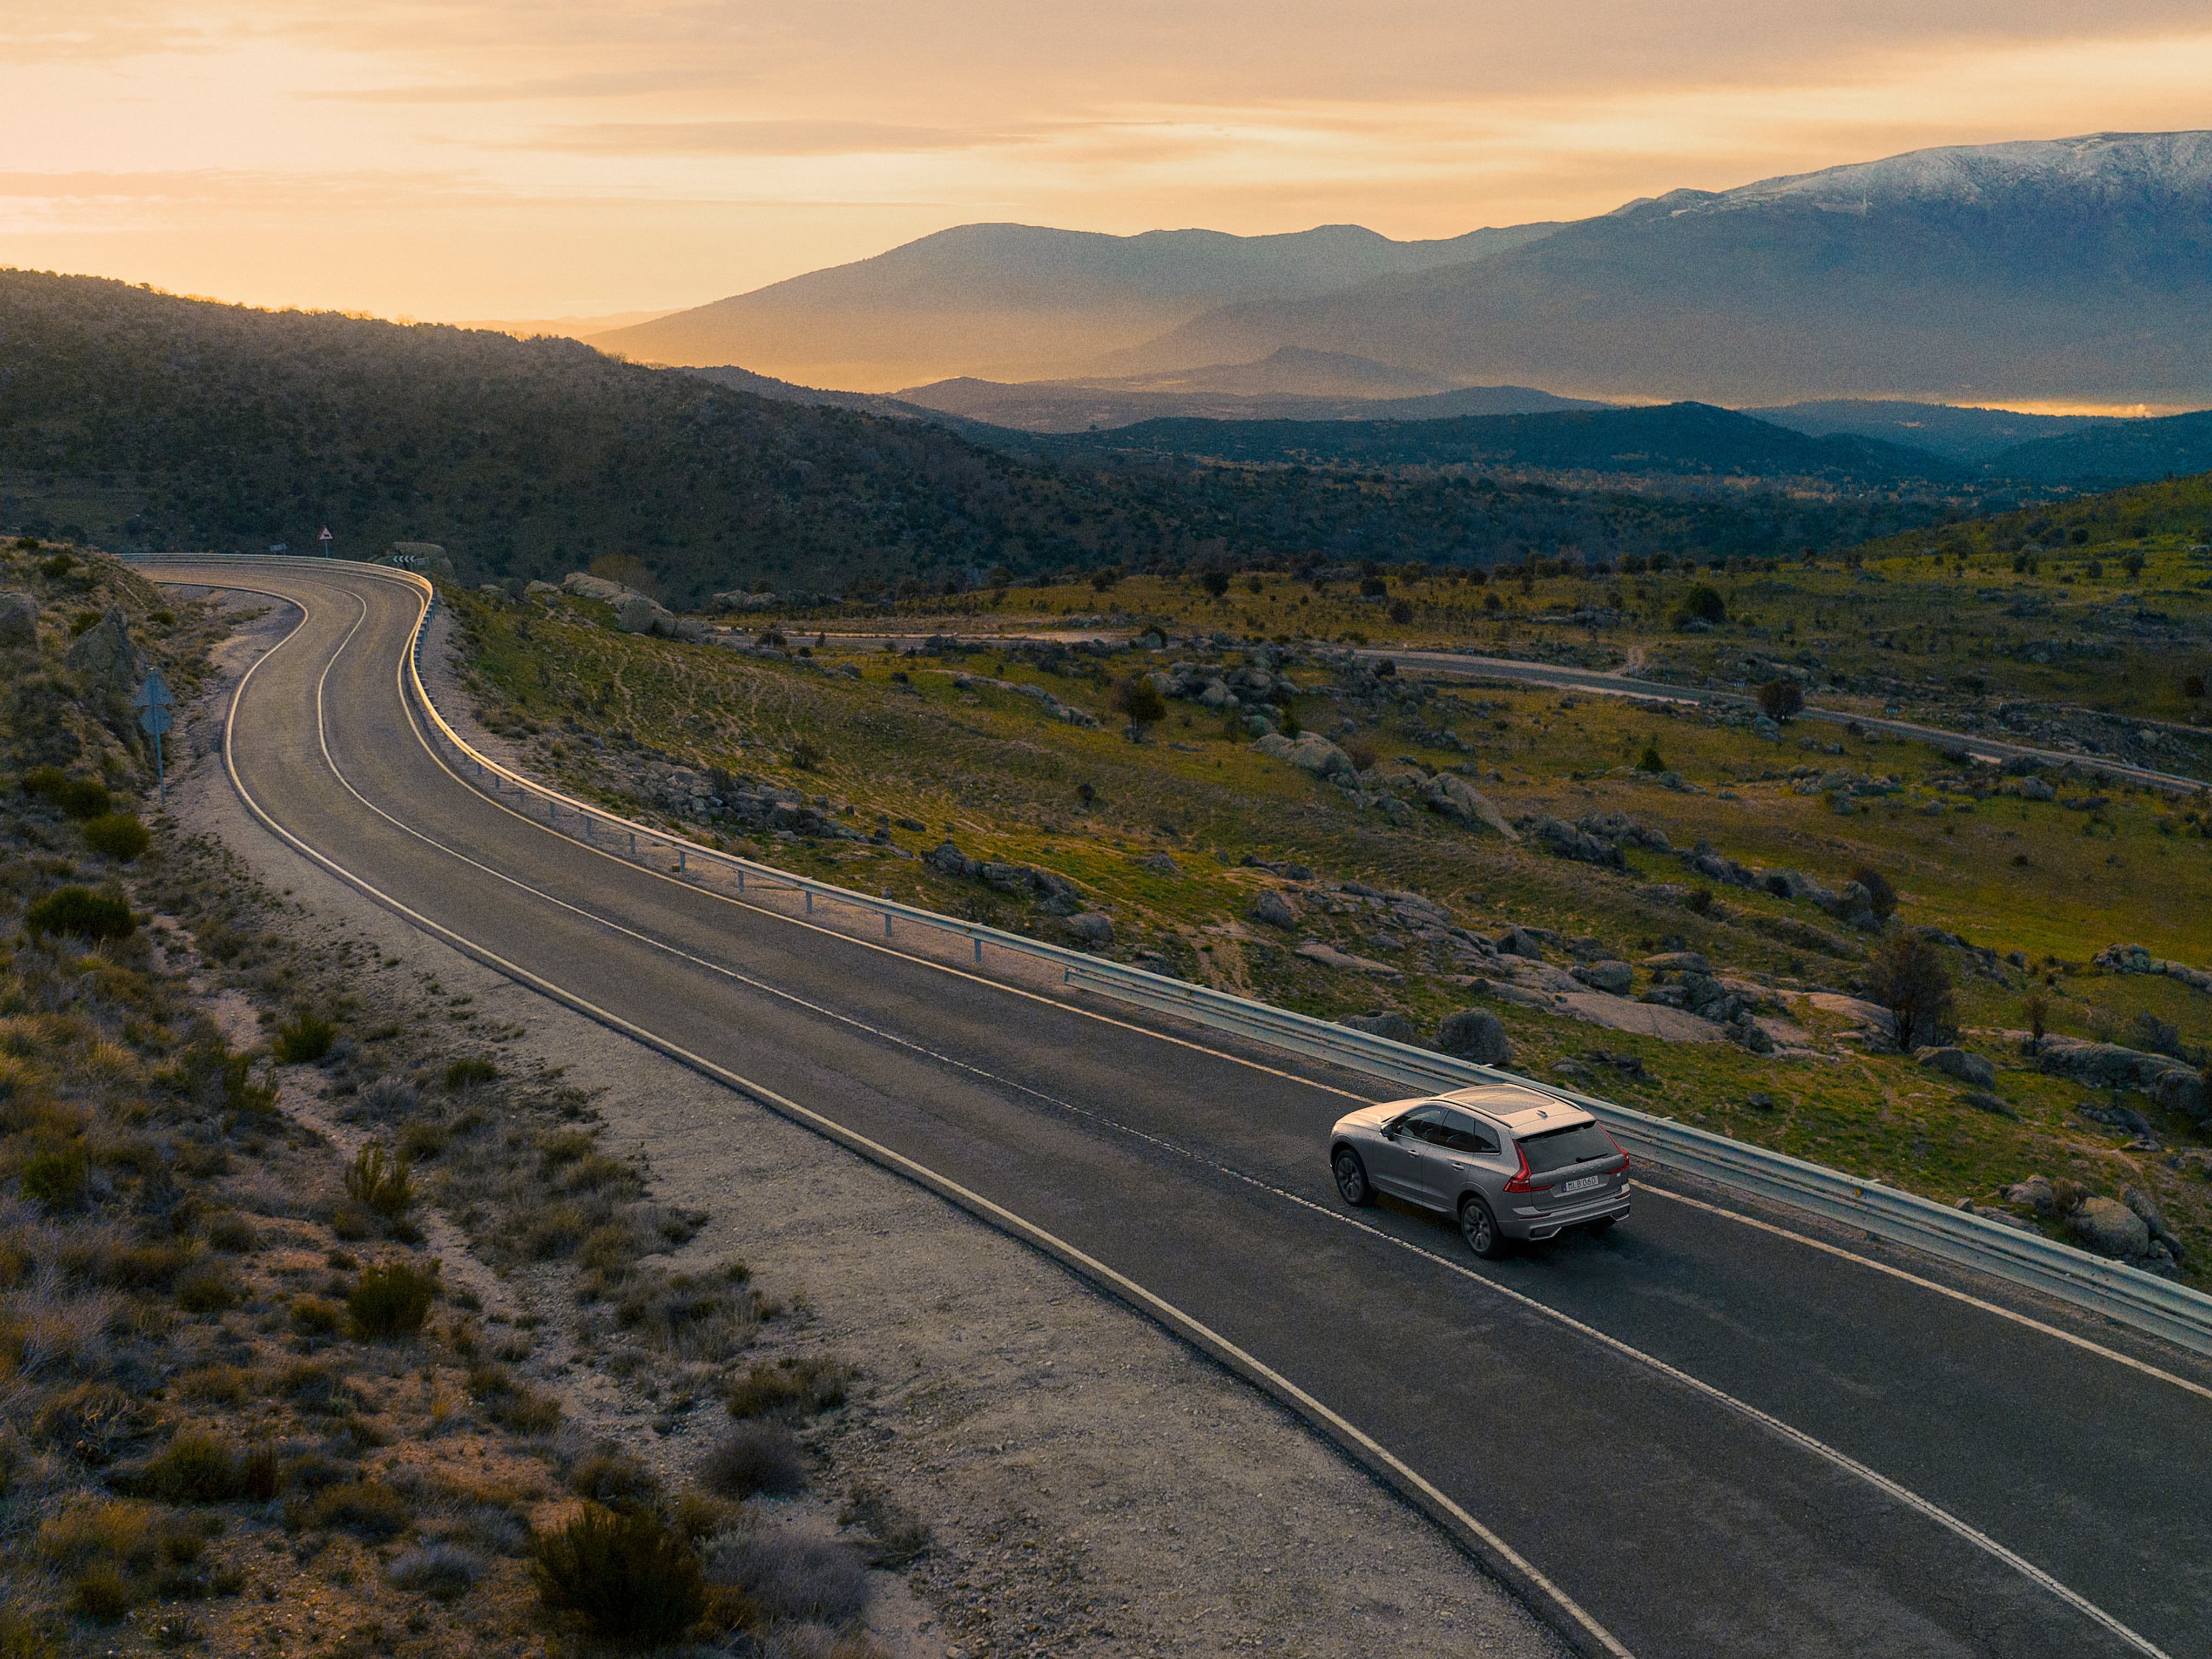 En Volvo XC60 Recharge laddhybrid som kör på en kurvig väg i solnedgången.